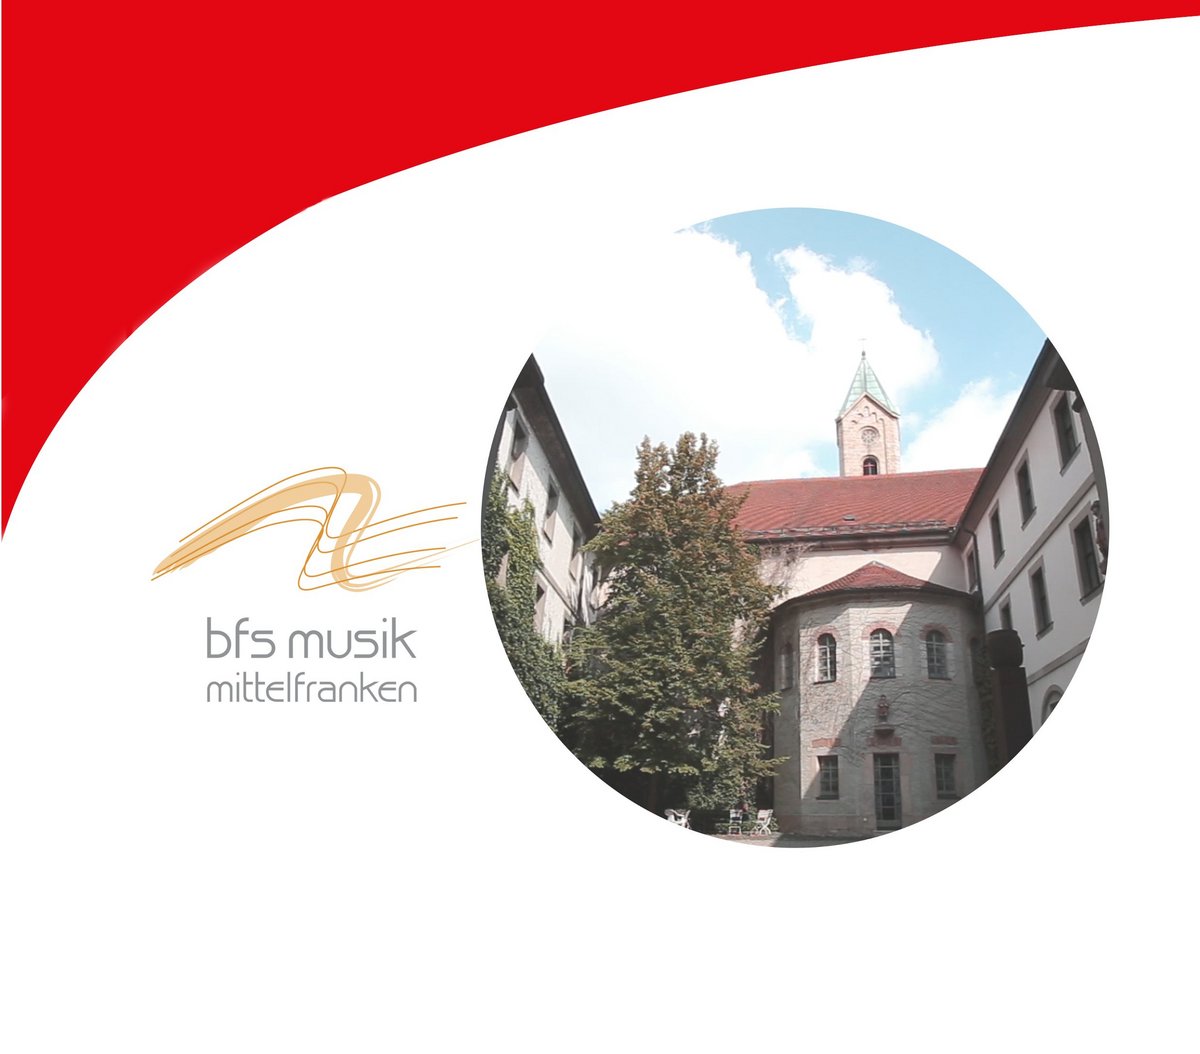 Dekoratives Bild: Der rote Balken aus dem Logo des Bezirks Mittelfranken, Logo der BFS Musik und ein rundes Bild vom Innenhof der Schule